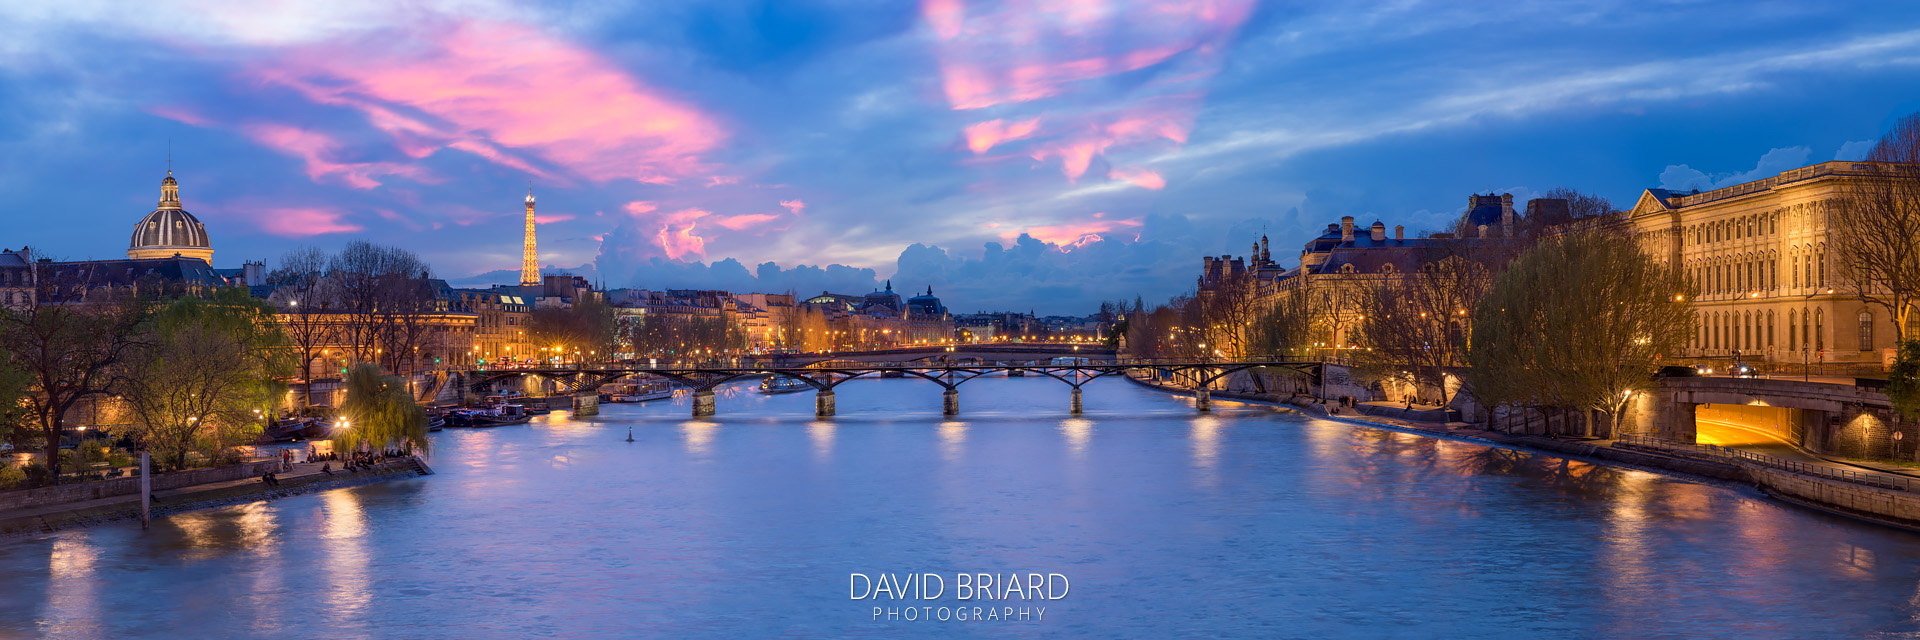 Pont des Arts at night © David Briard